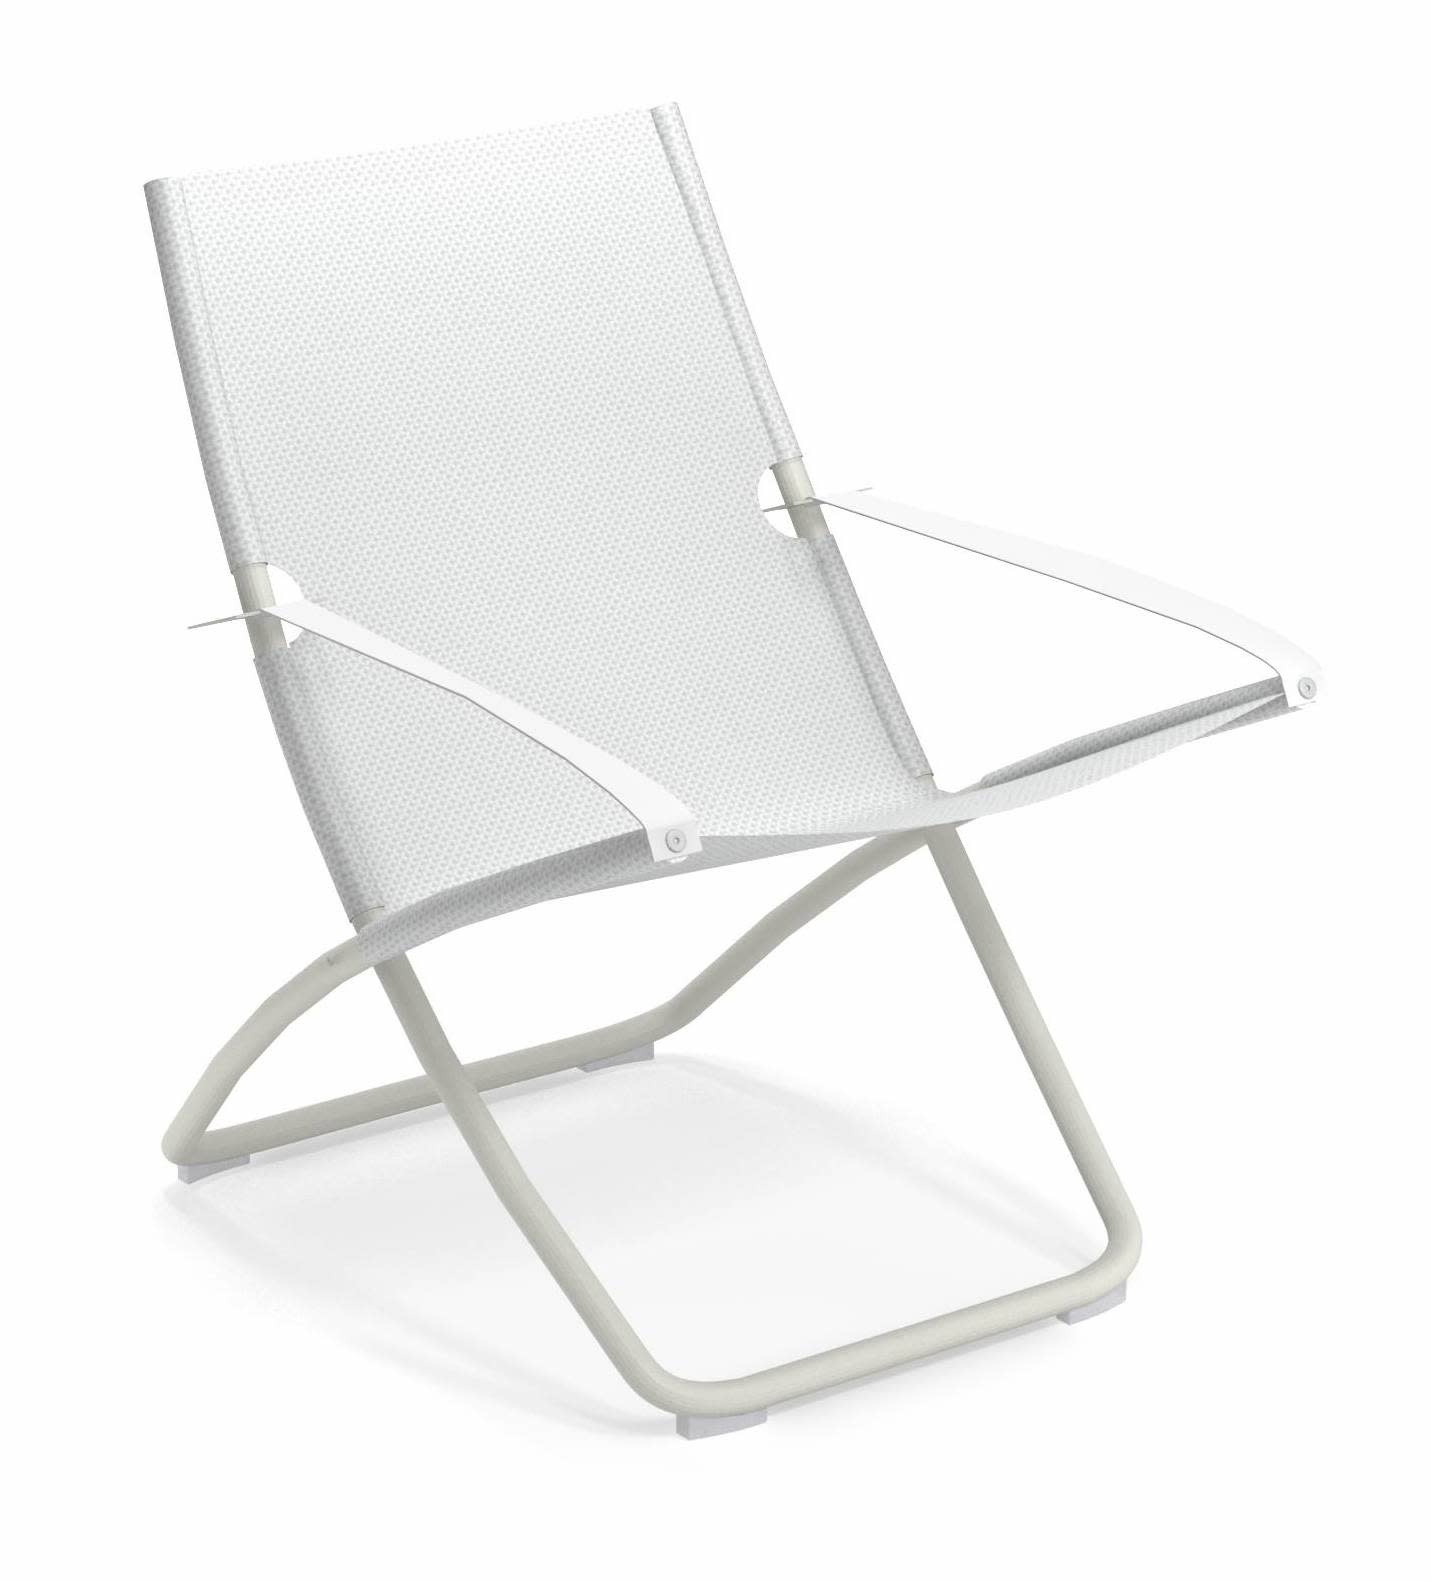 dealer Bemiddelaar Specialiseren Snooze loungestoel white/white - vida design